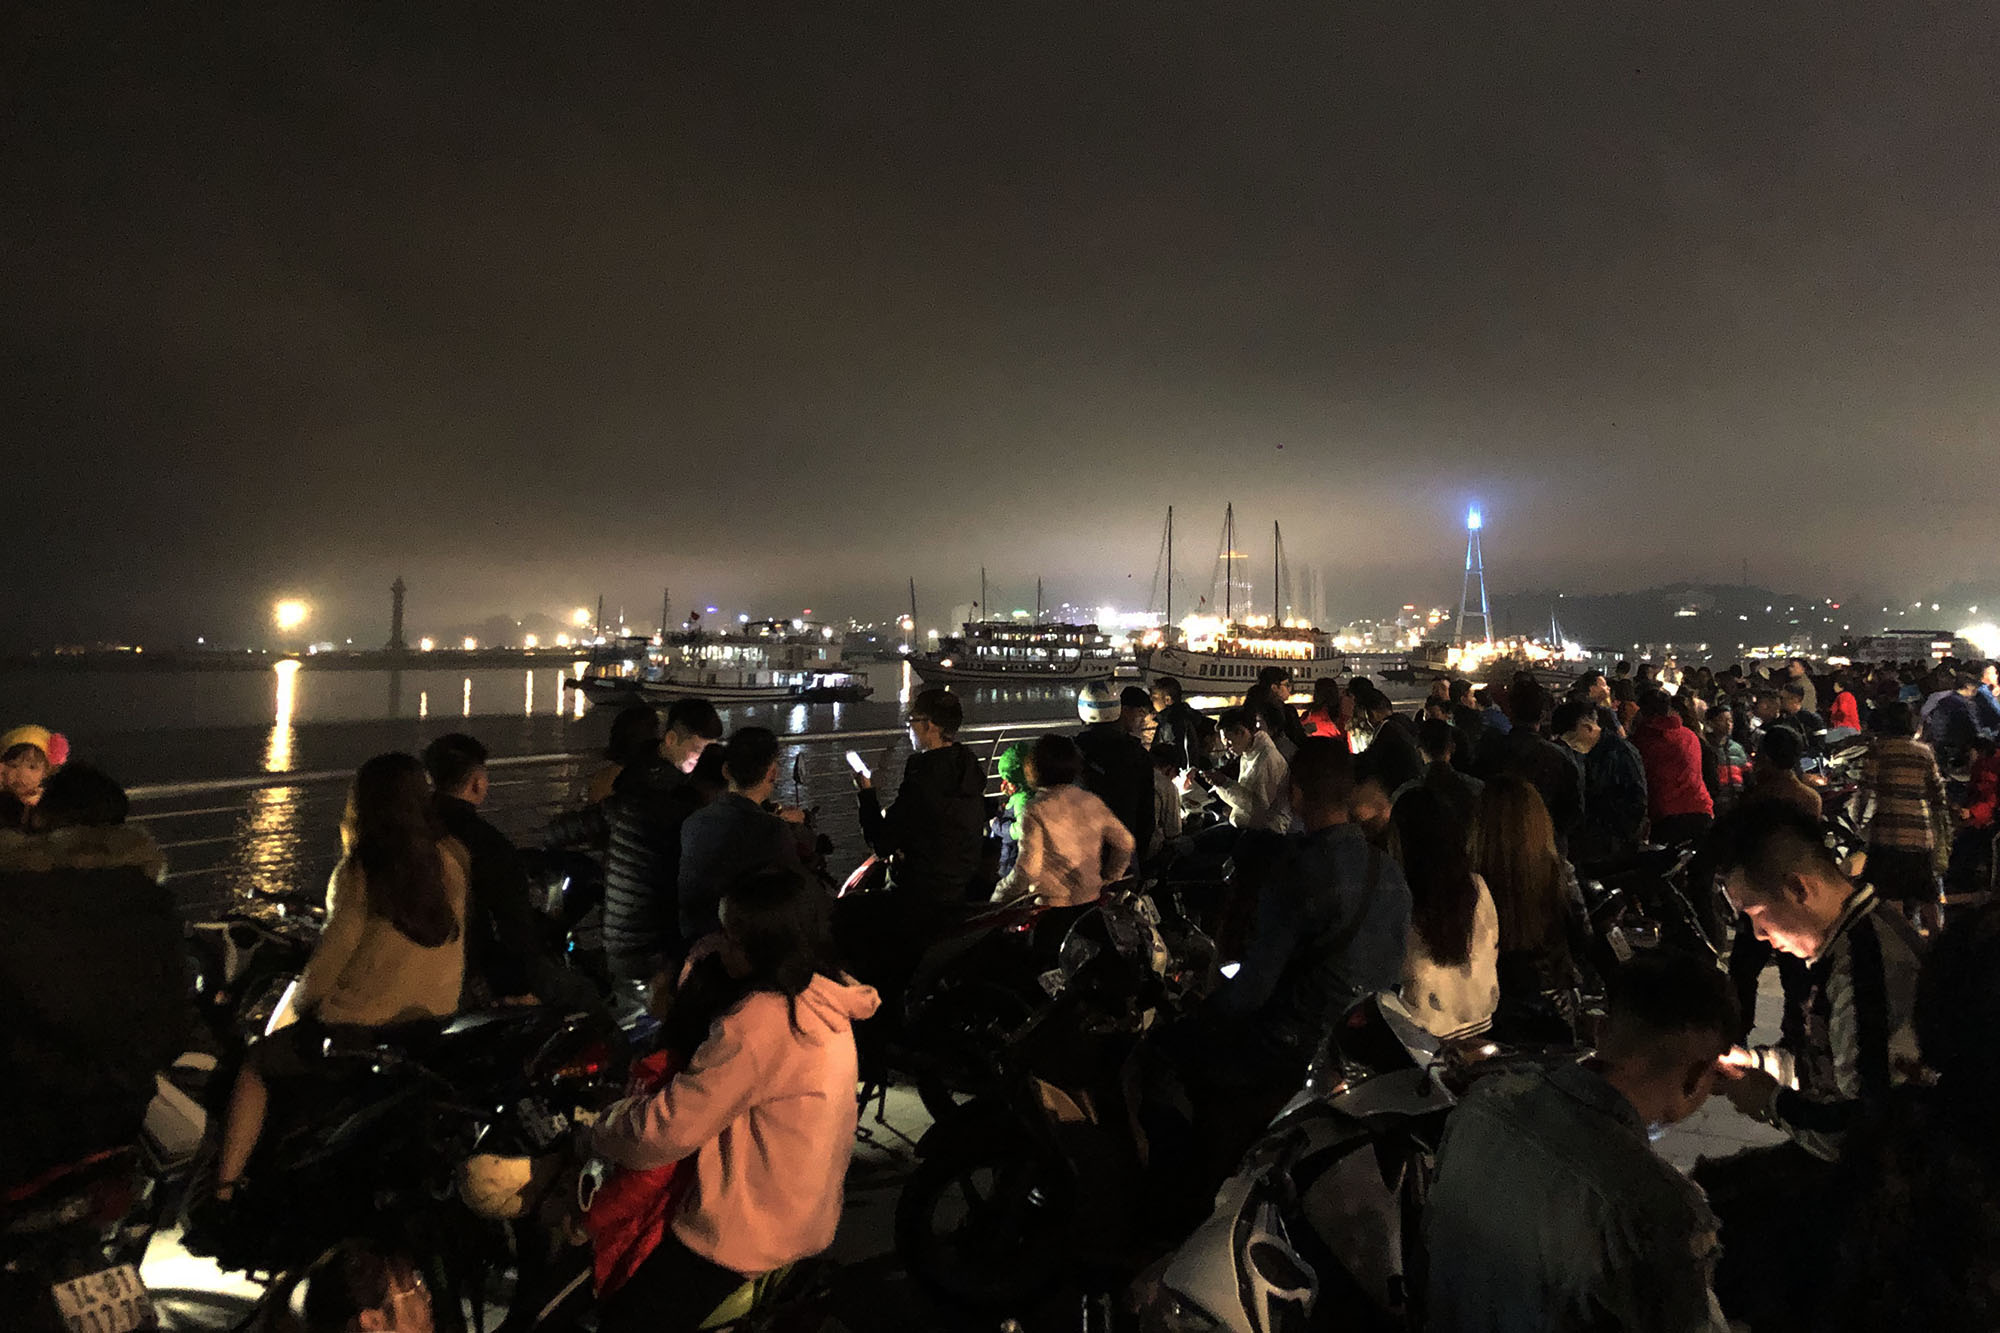 Rất đông người dân thành phố Hạ Long háo hức đón chờ giây phút chuyển giao năm mới